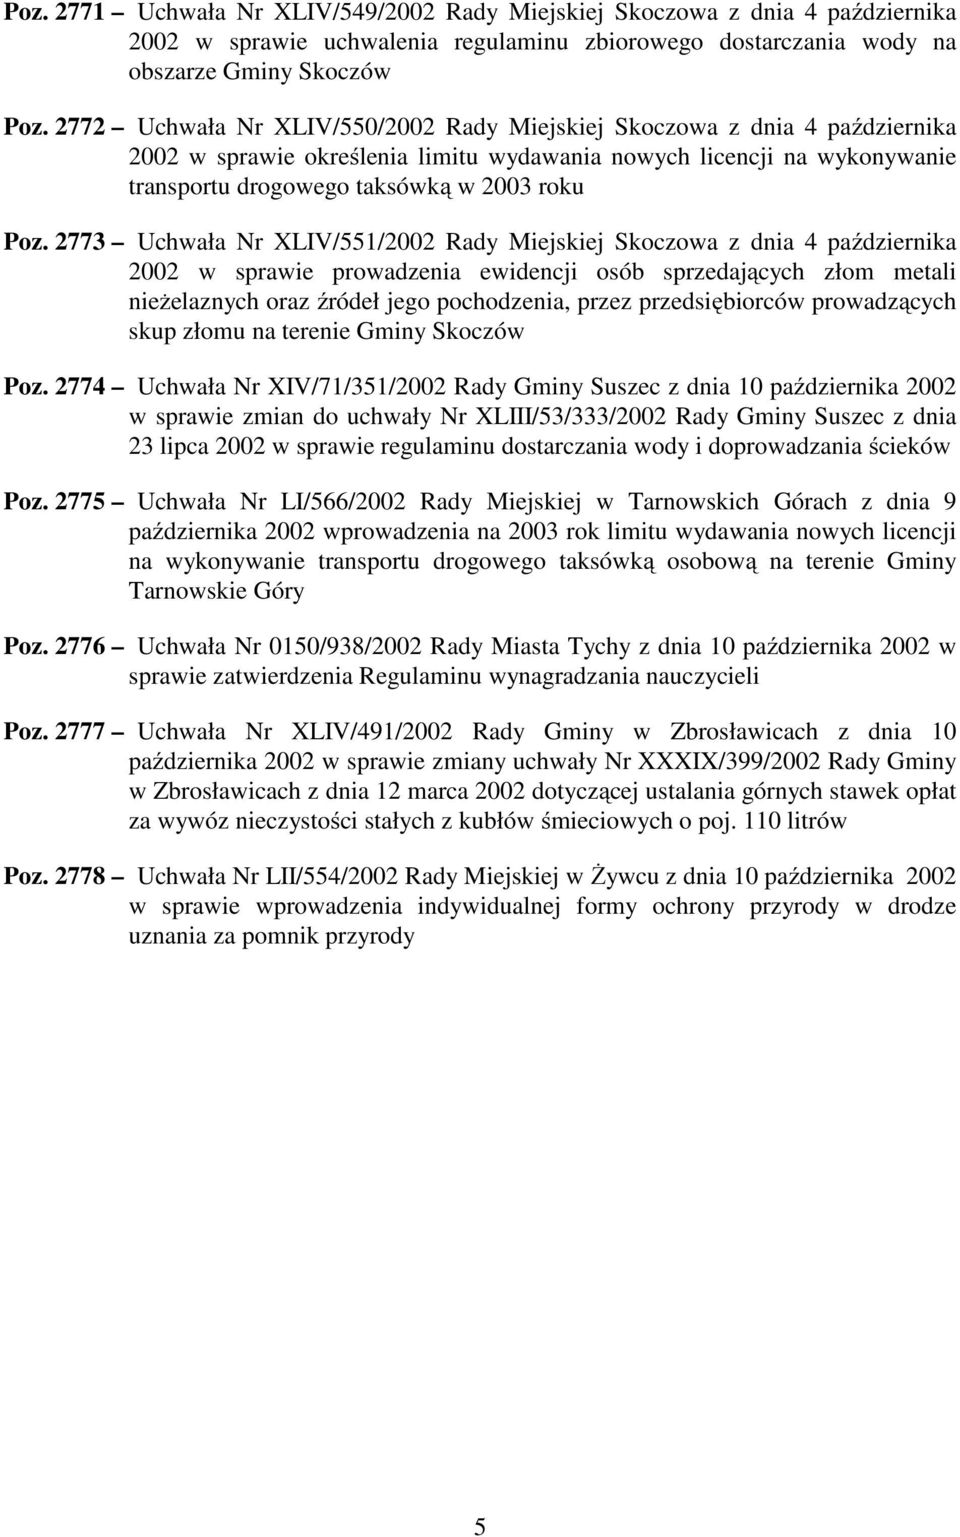 2773 Uchwała Nr XLIV/551/2002 Rady Miejskiej Skoczowa z dnia 4 października 2002 w sprawie prowadzenia ewidencji osób sprzedających złom metali nieżelaznych oraz źródeł jego pochodzenia, przez